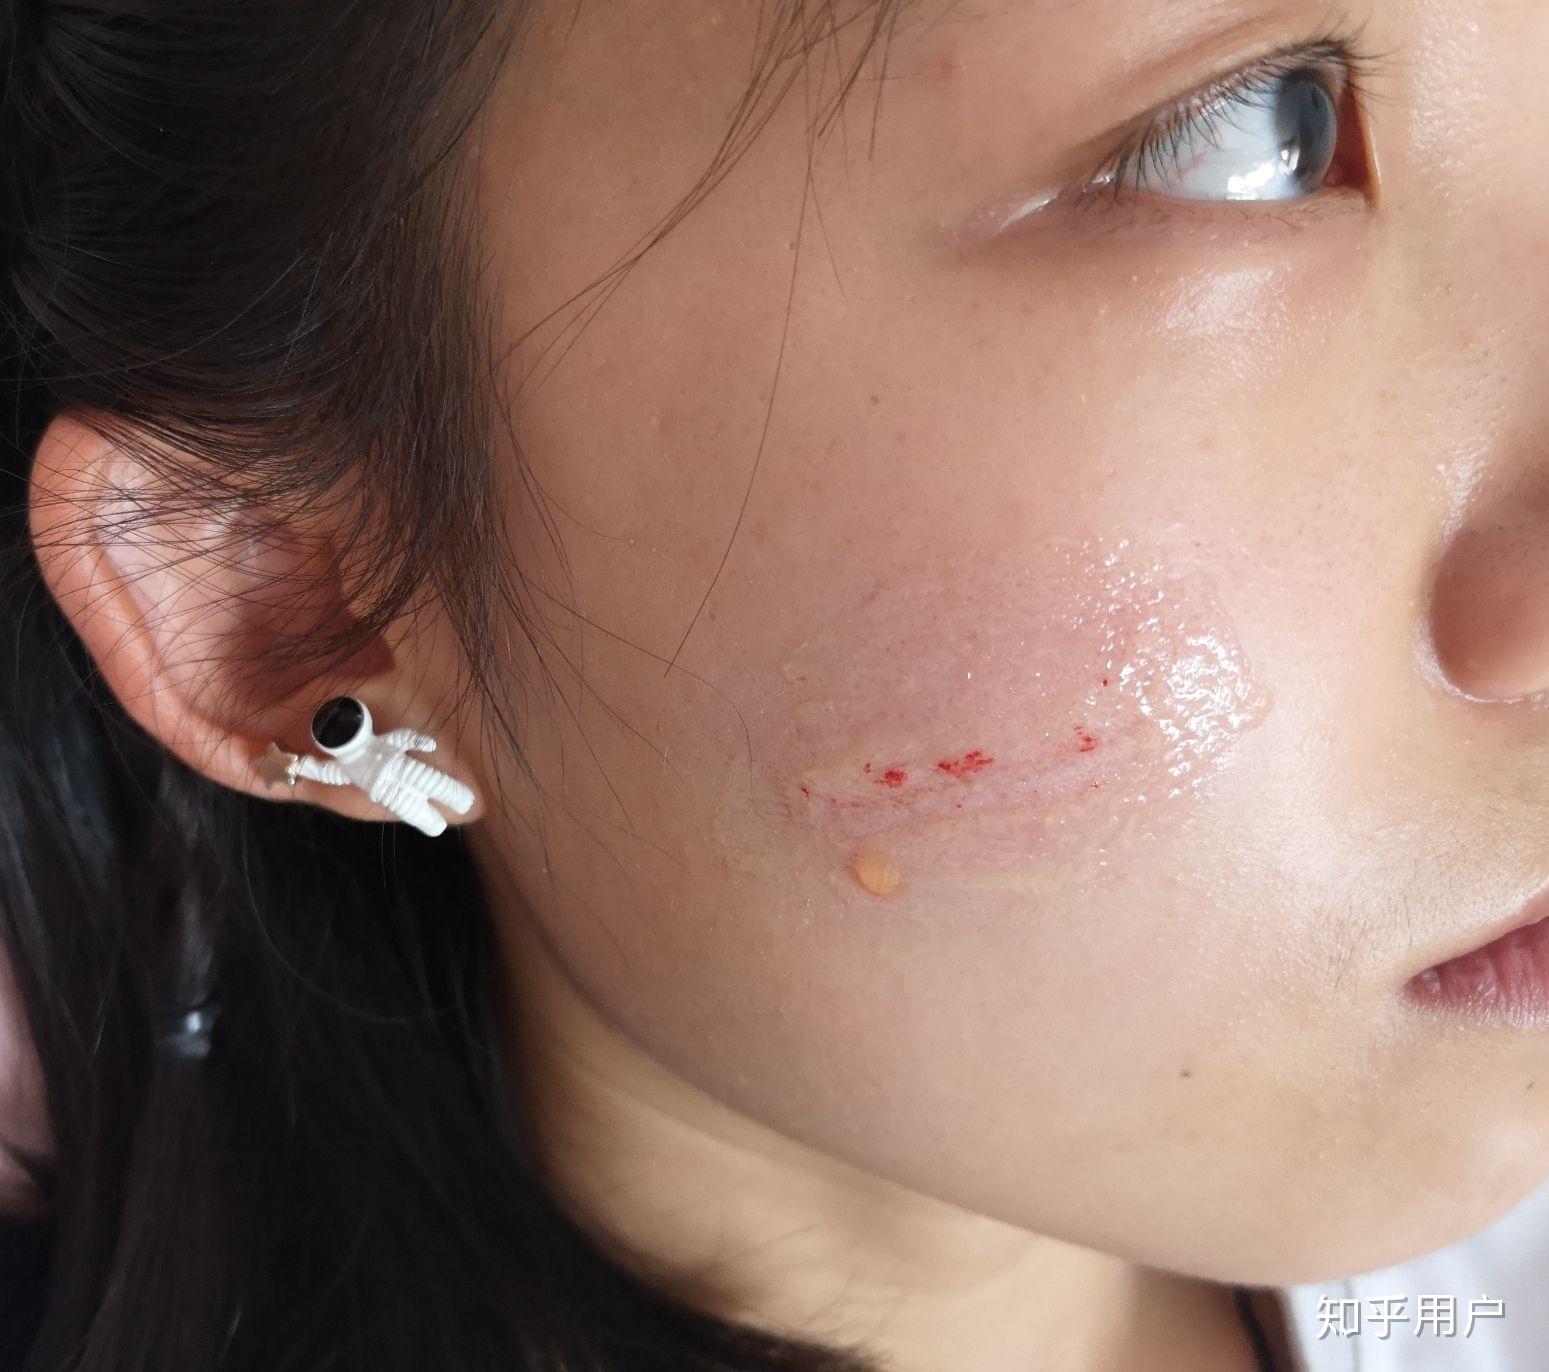 小时候打架脸上被抓了很多疤痕,可以怎么修复疤痕? 